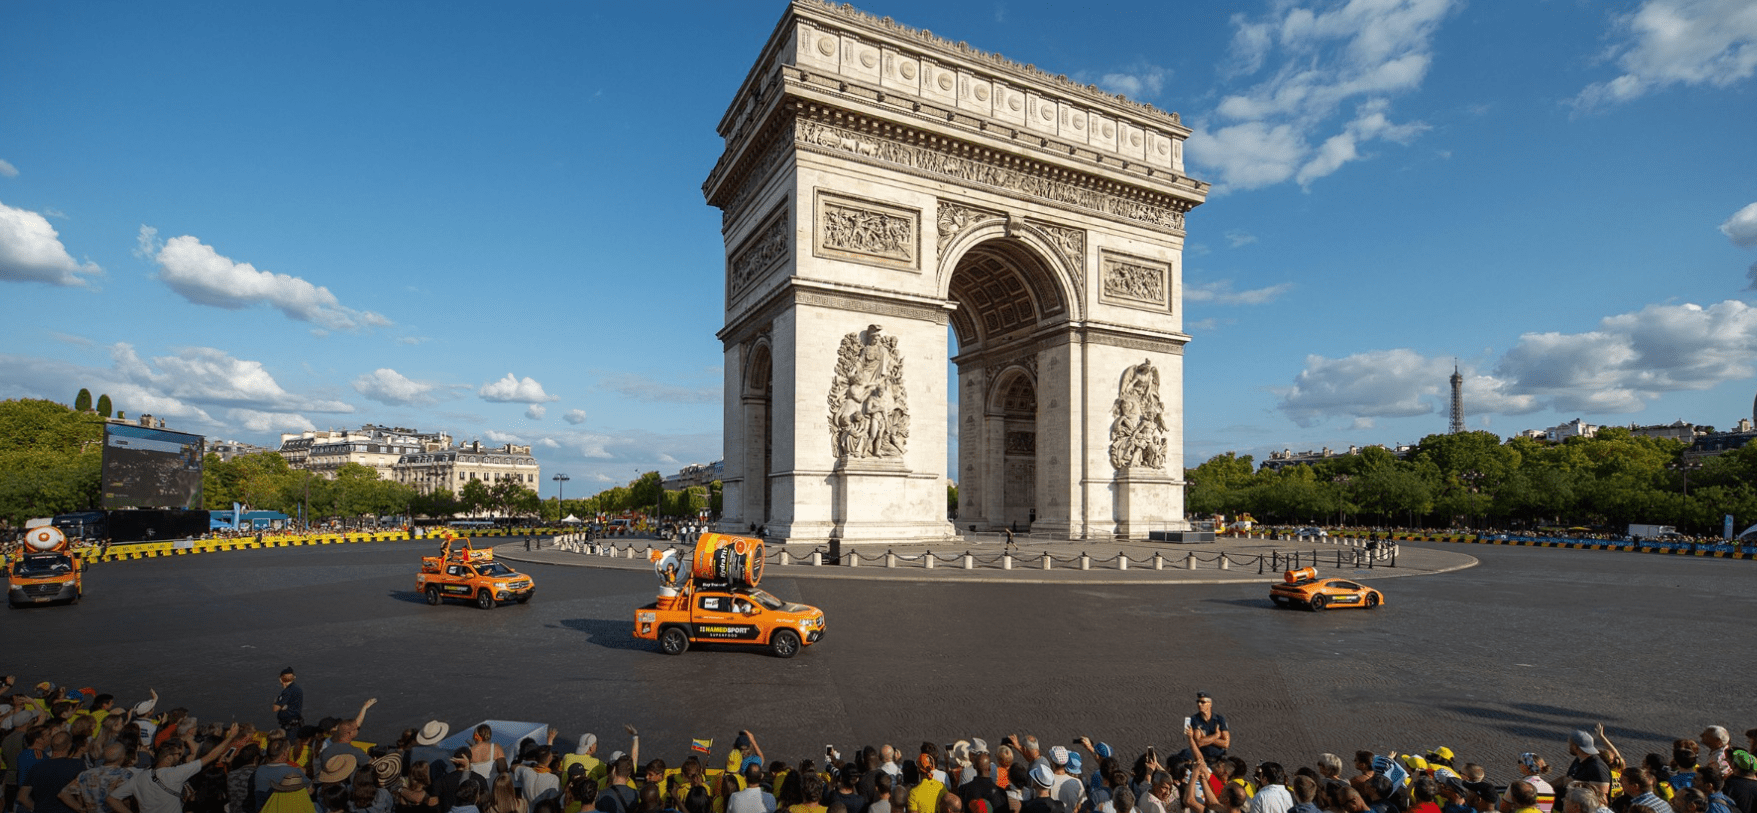 NamedSport patrocina grandes vueltas ciclísticas de Europa. En la foto, el Arco del Triunfo en París.